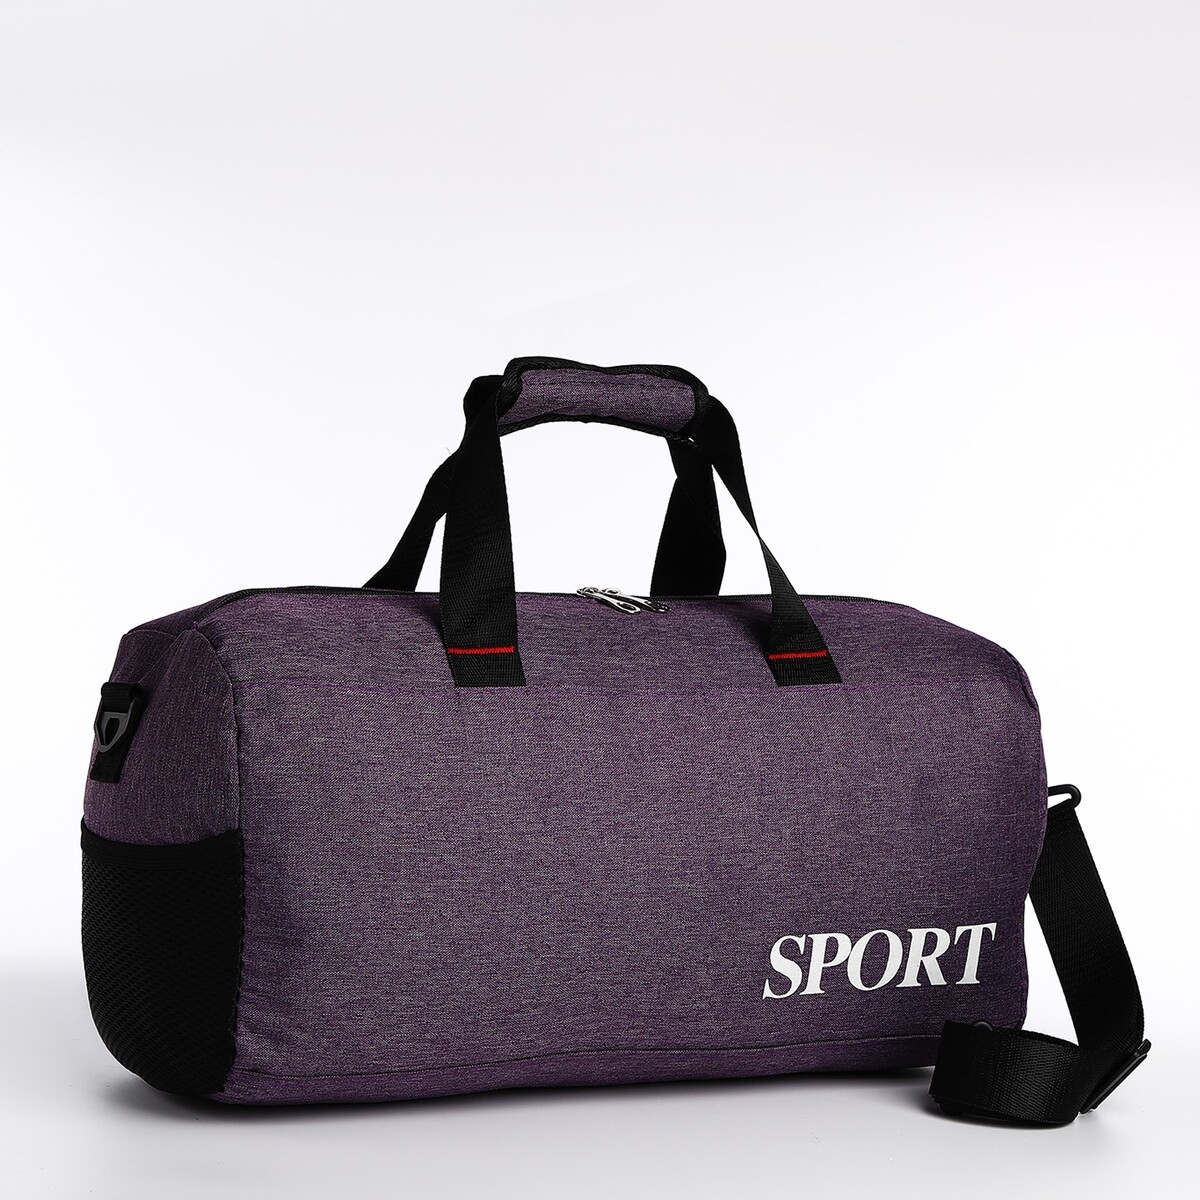 Сумка спортивная на молнии, длинный ремень, цвет фиолетовый туалет средний с сеткой 36 х 26 х 6 5 см фиолетовый